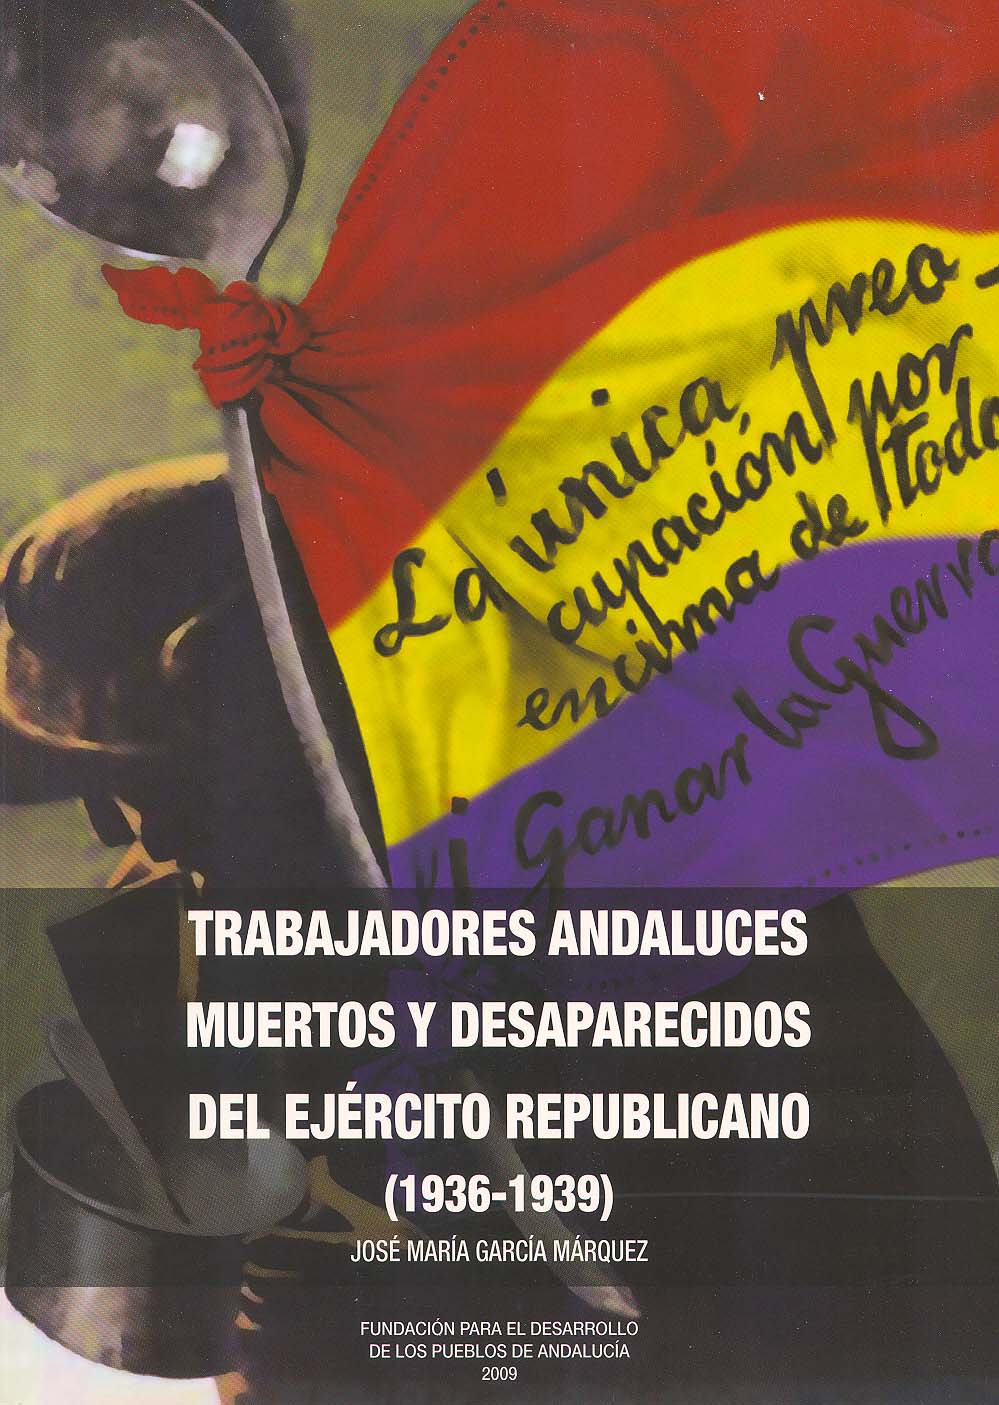 Trabajadores andaluces muertos y desaparecidos del Ejército Republicano (1936-1939).